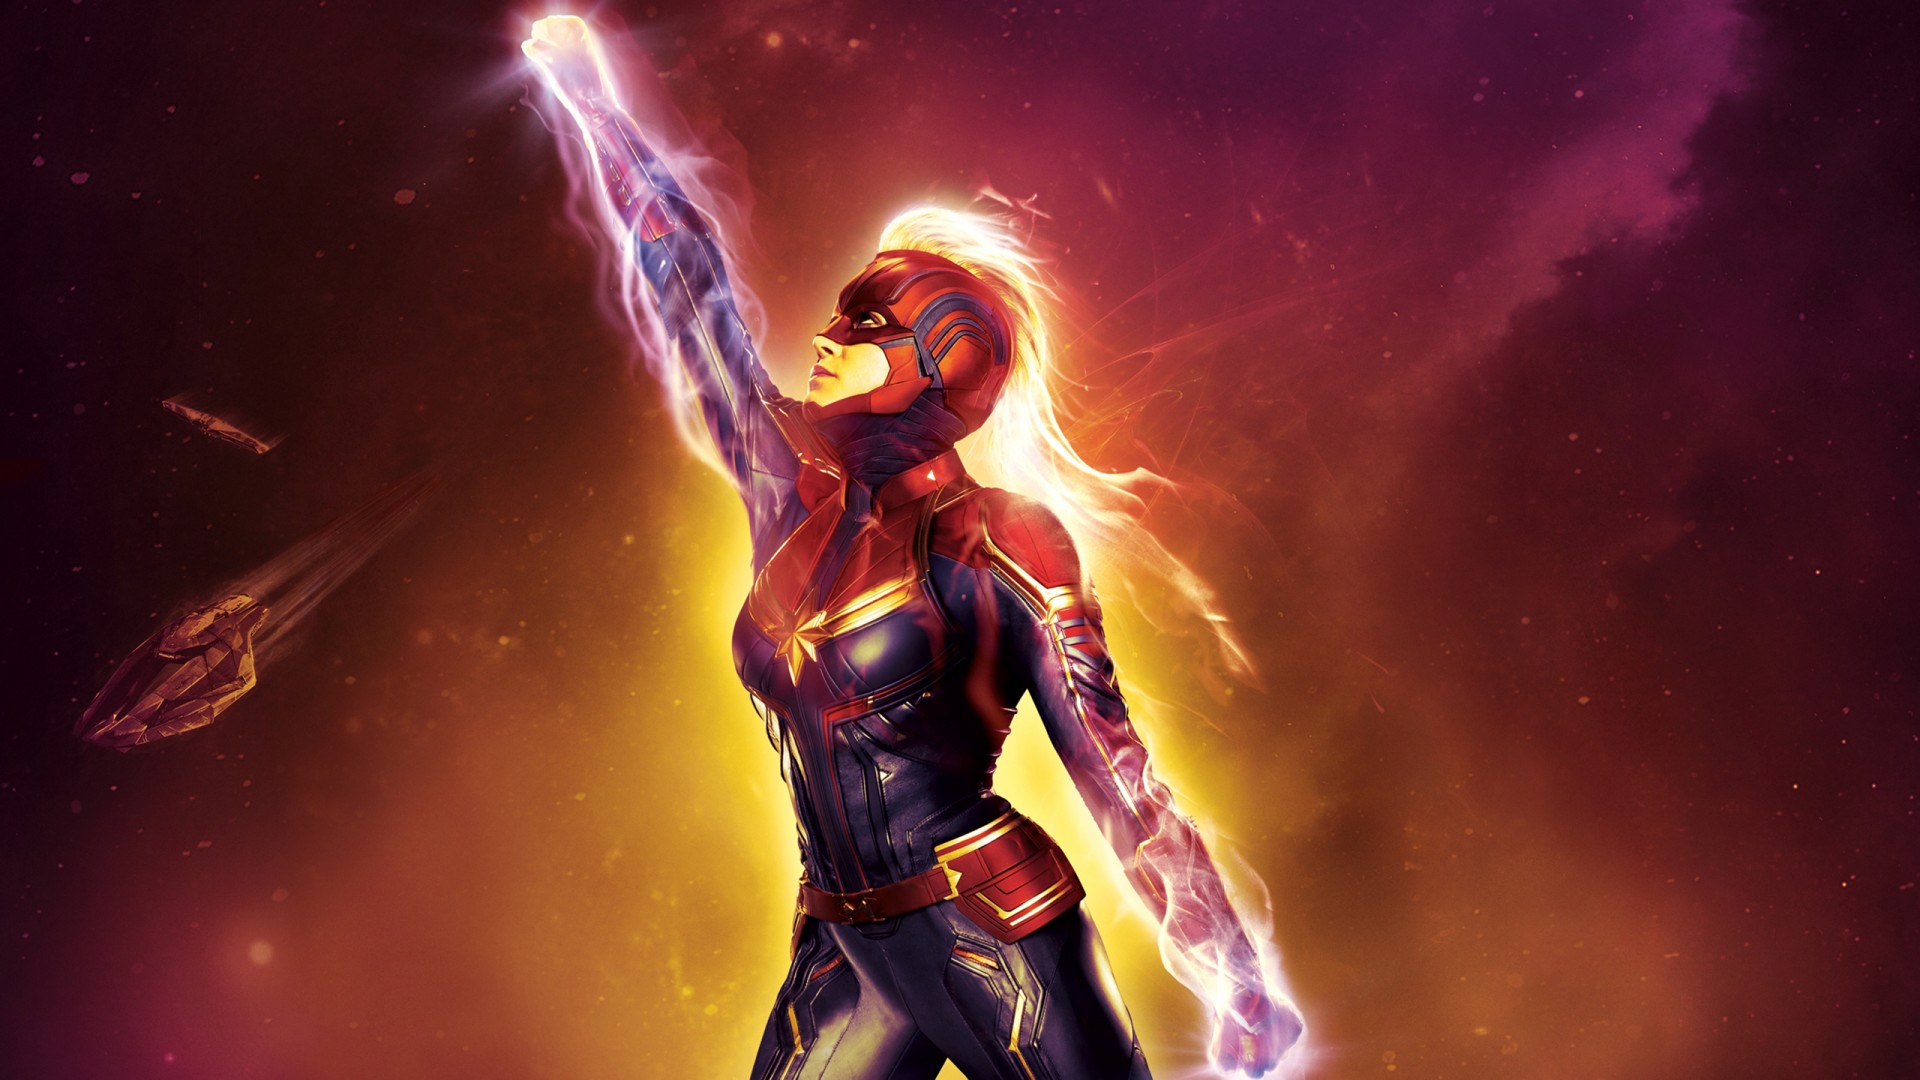 Captain Marvel Imax Poster - Captain Marvel Wallpaper 4k - HD Wallpaper 